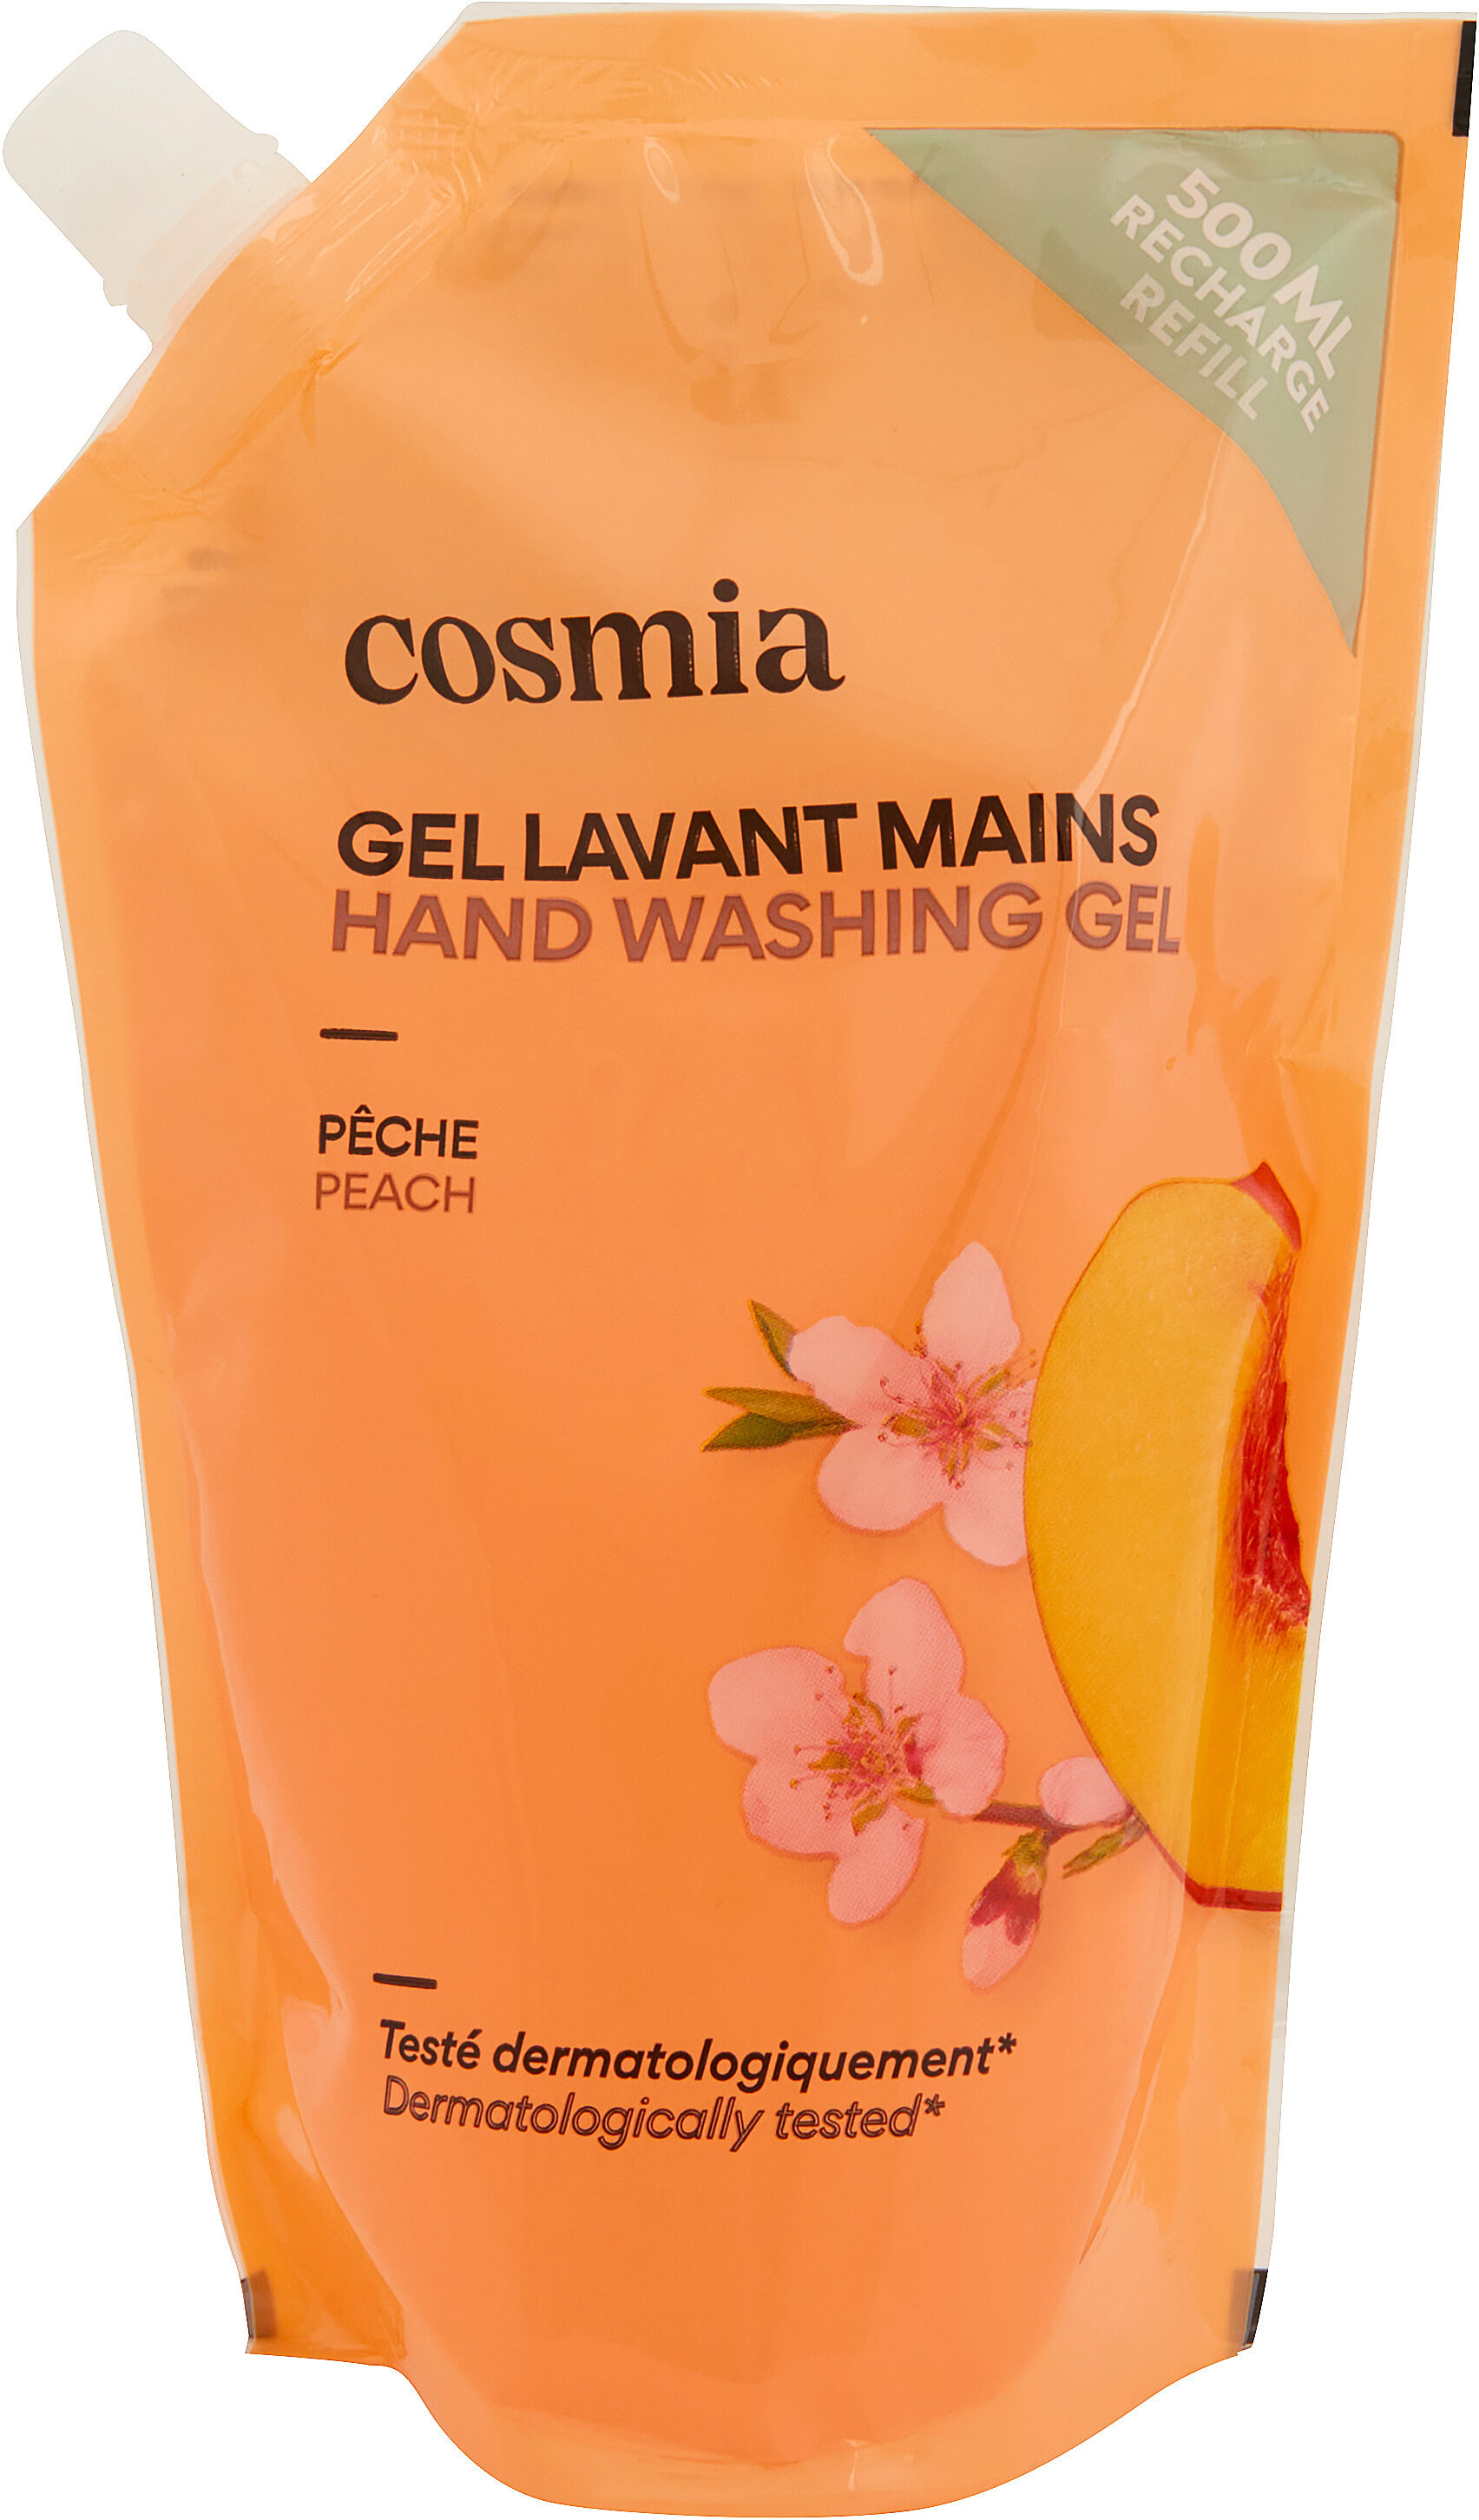 Cosmia savon main fleur de peche recharge 500 ml - Produit - fr